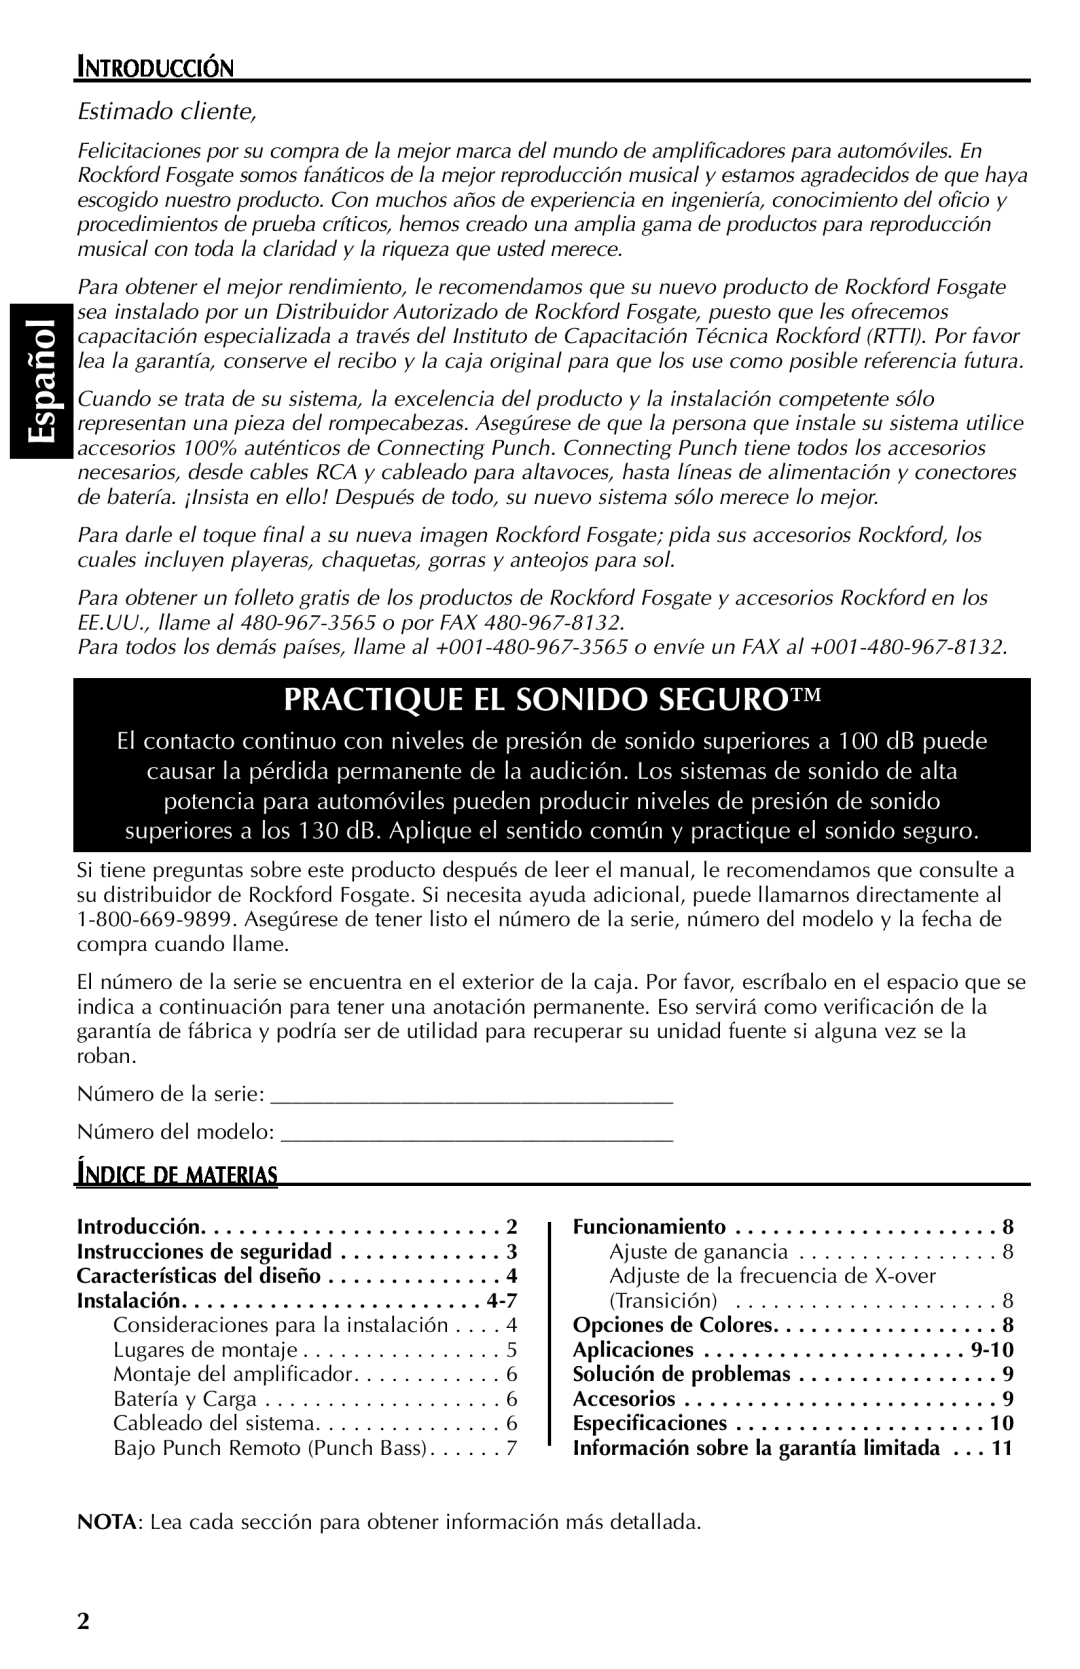 Rockford Fosgate FFX6 manual Español, Practique El Sonido Seguro, Introducción, Estimado cliente, Índice De Materias 